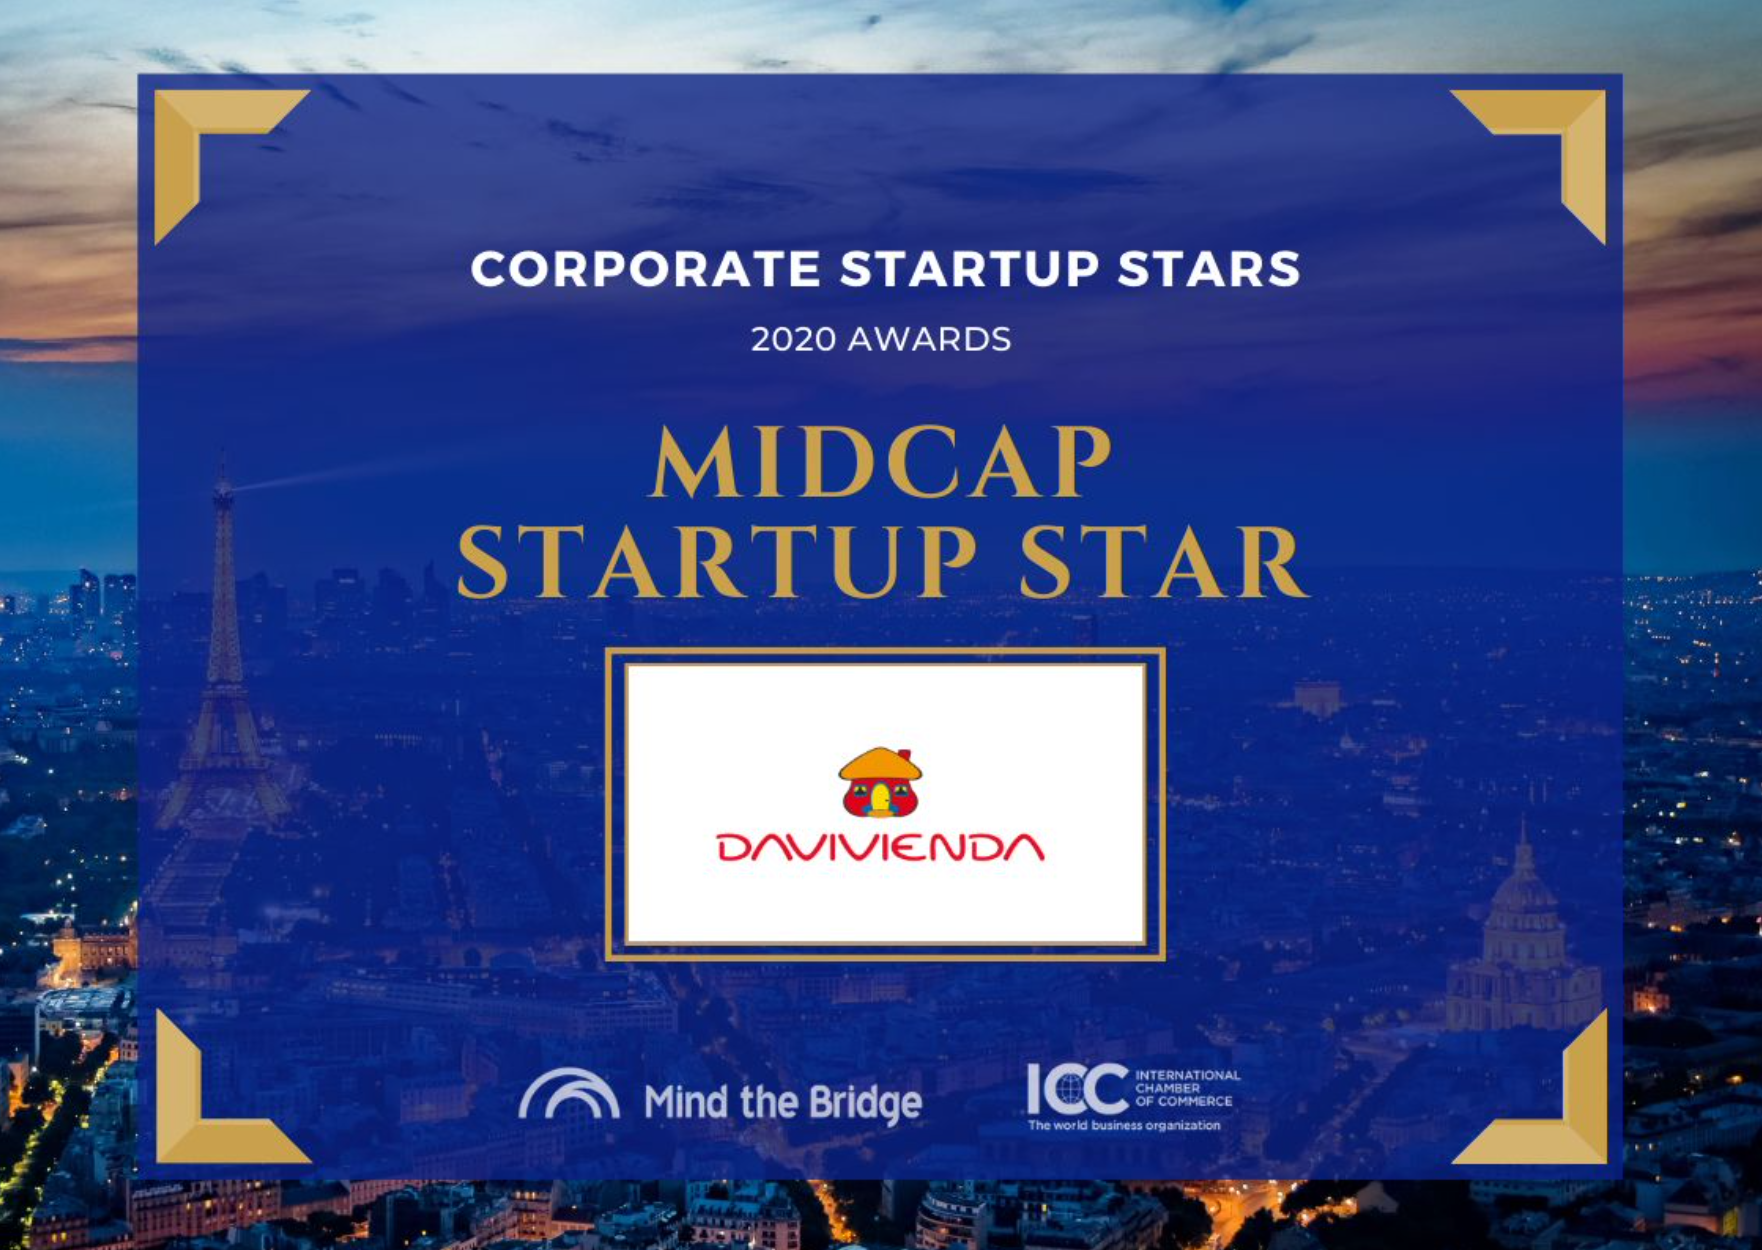 Davivienda y Grupo Bolívar reciben reconocimiento en los Corporate Startup Awards que premian a las empresas más innovadoras del mundo.